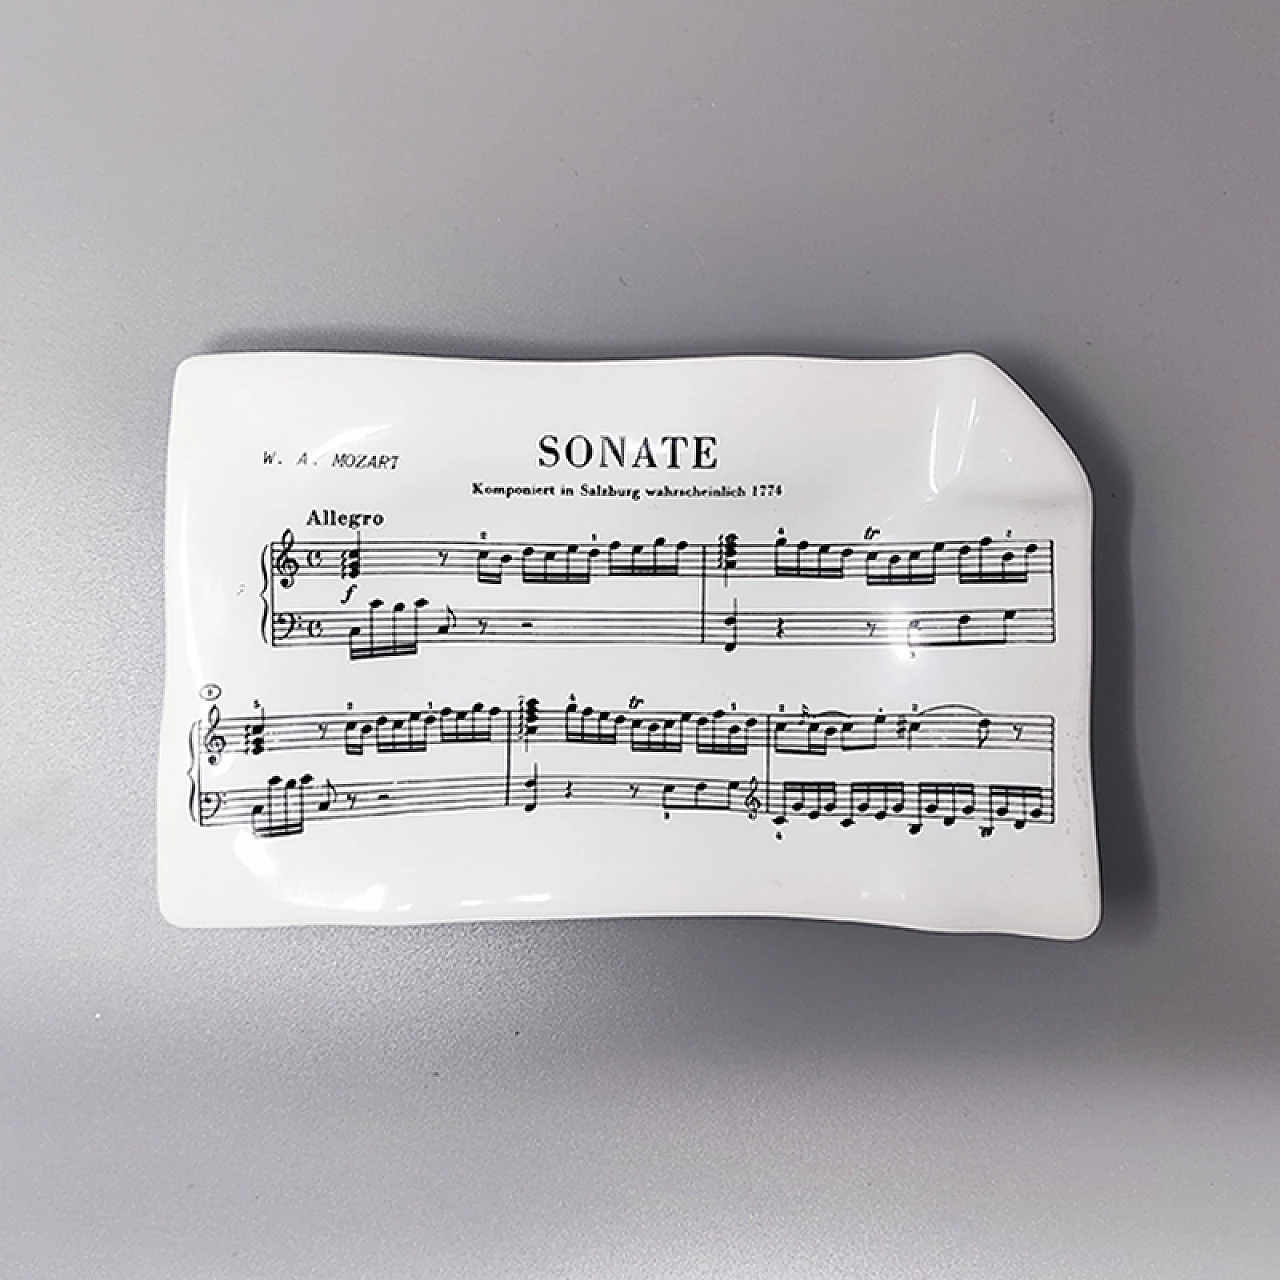 Vide poche Sonate- Mozart by Piero Fornasetti, 1950s 4